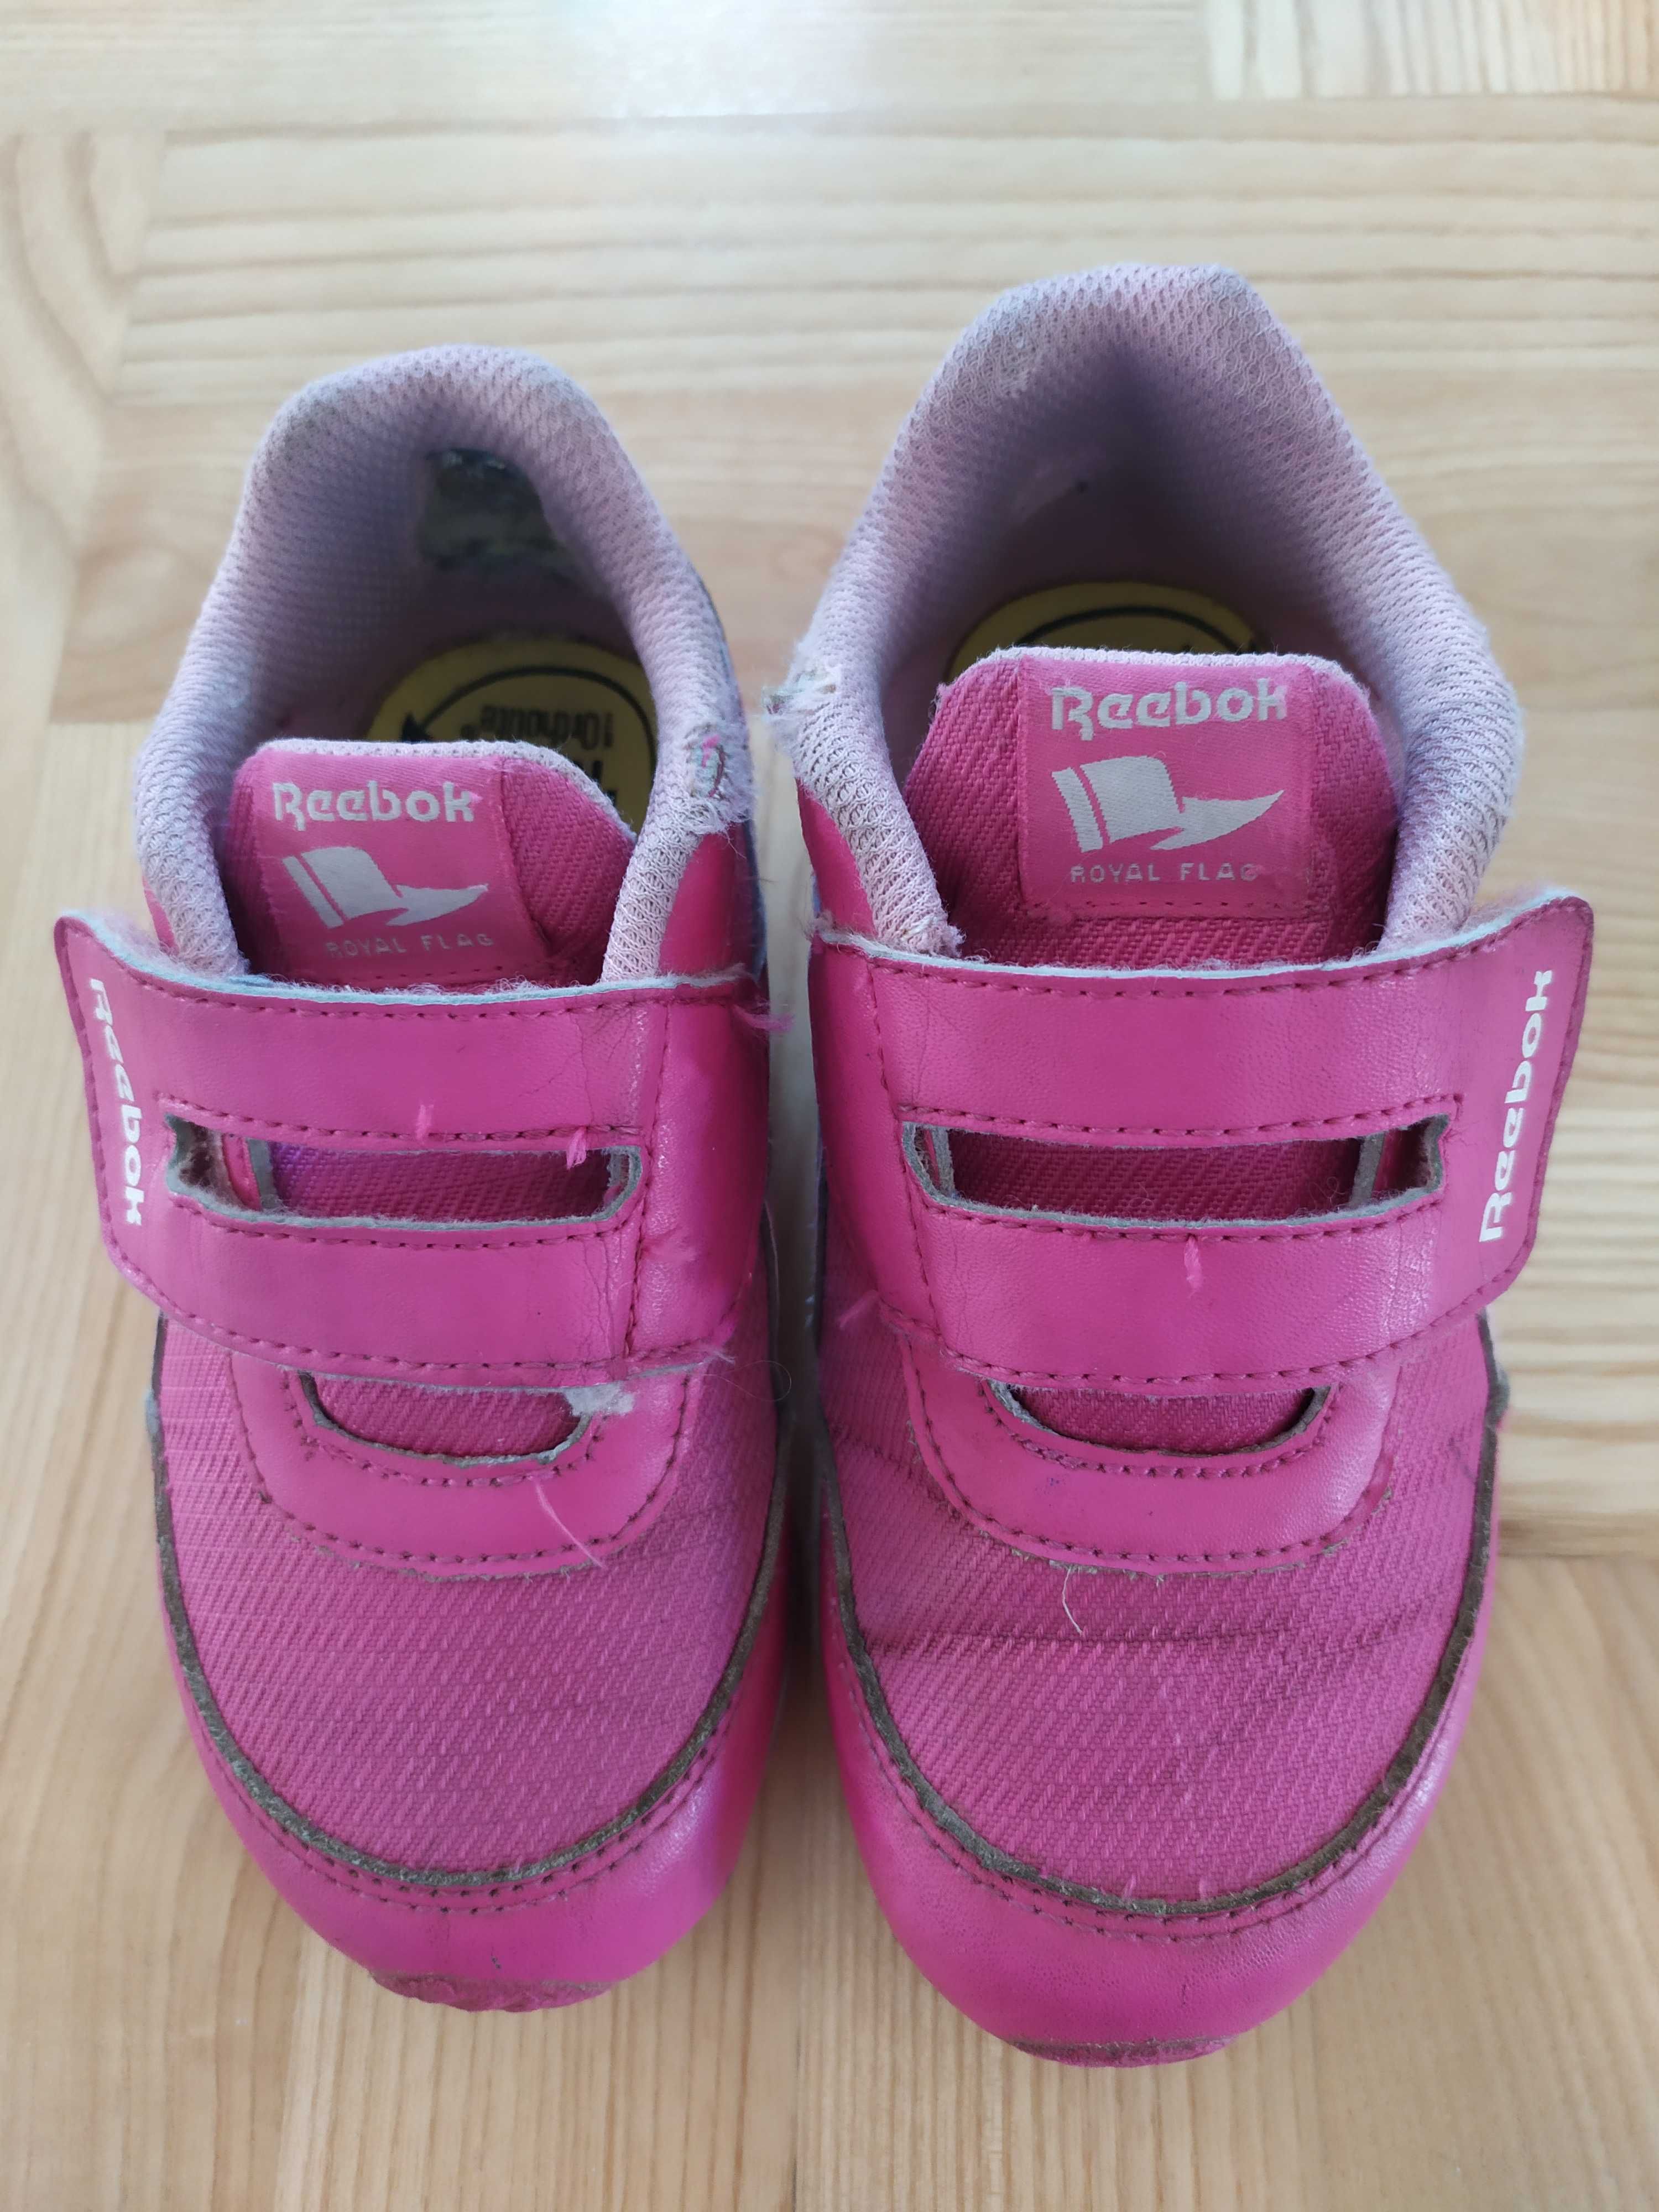 Sneakersy/adidasy Reebok dla dziewczynki, r. 26,5